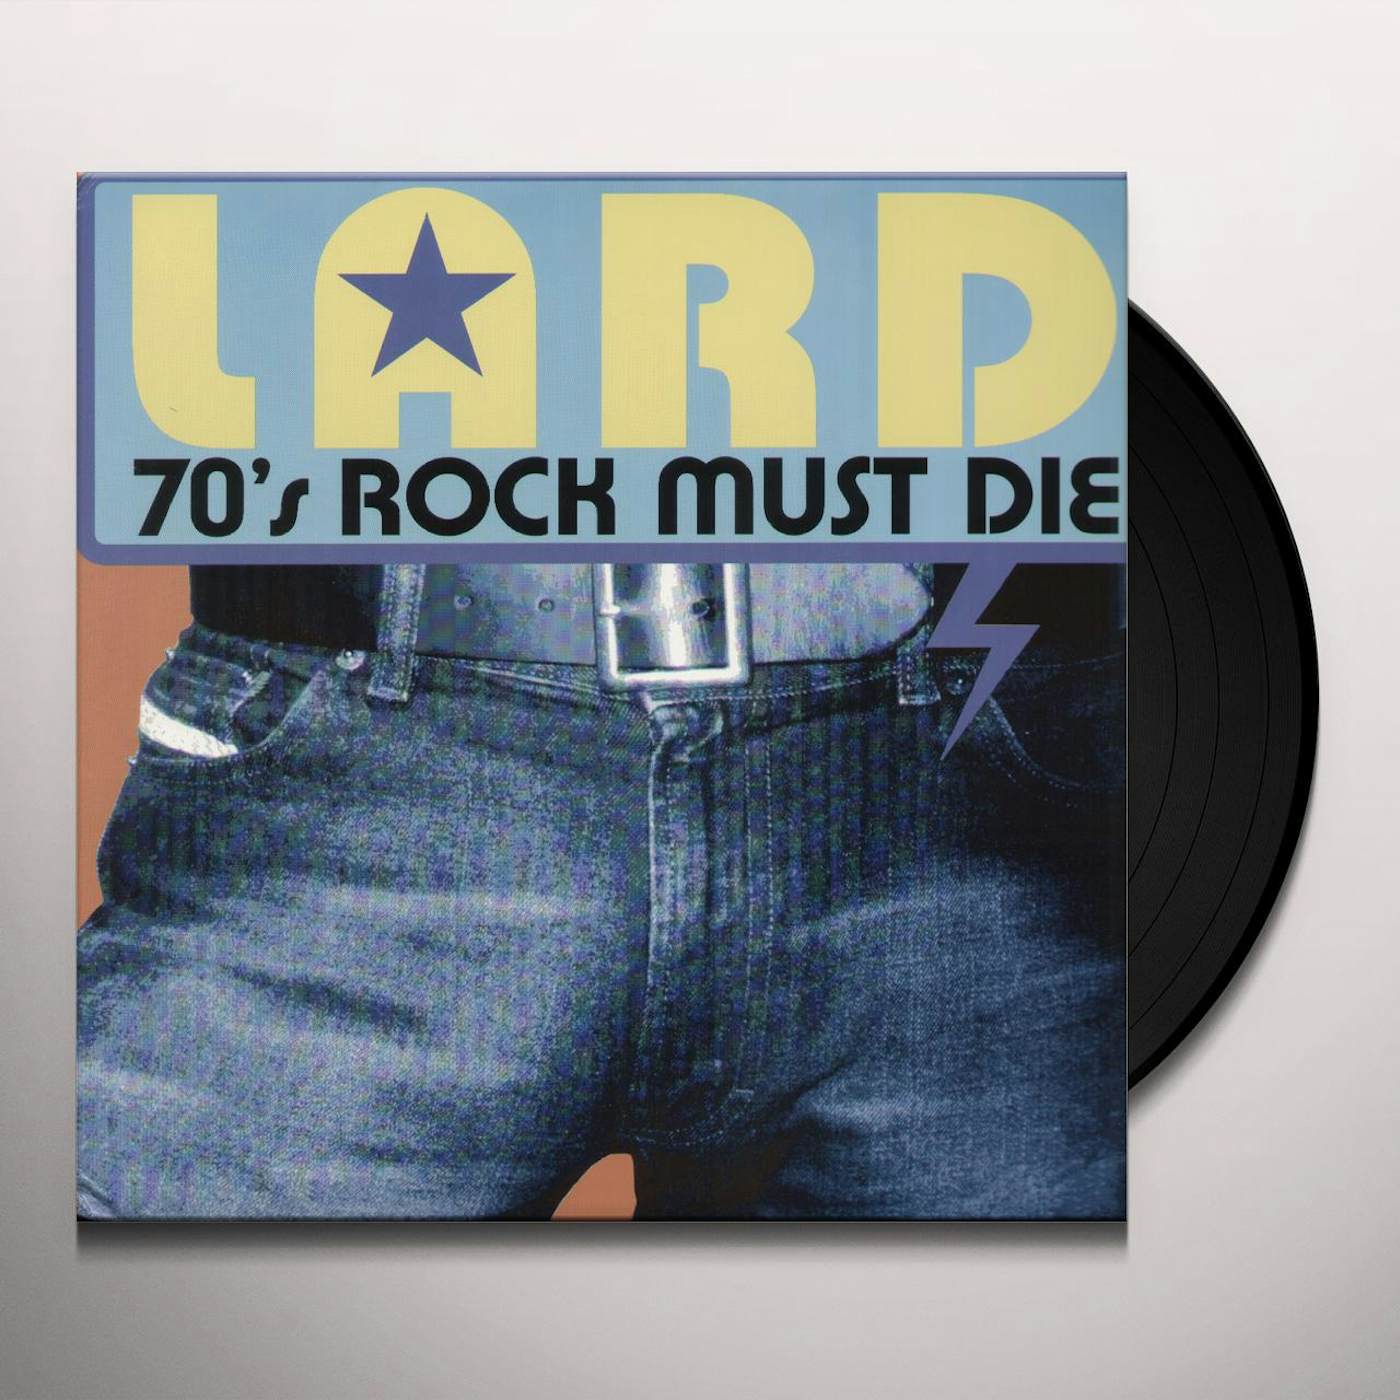 Lard 70's Rock Must Die Vinyl Record